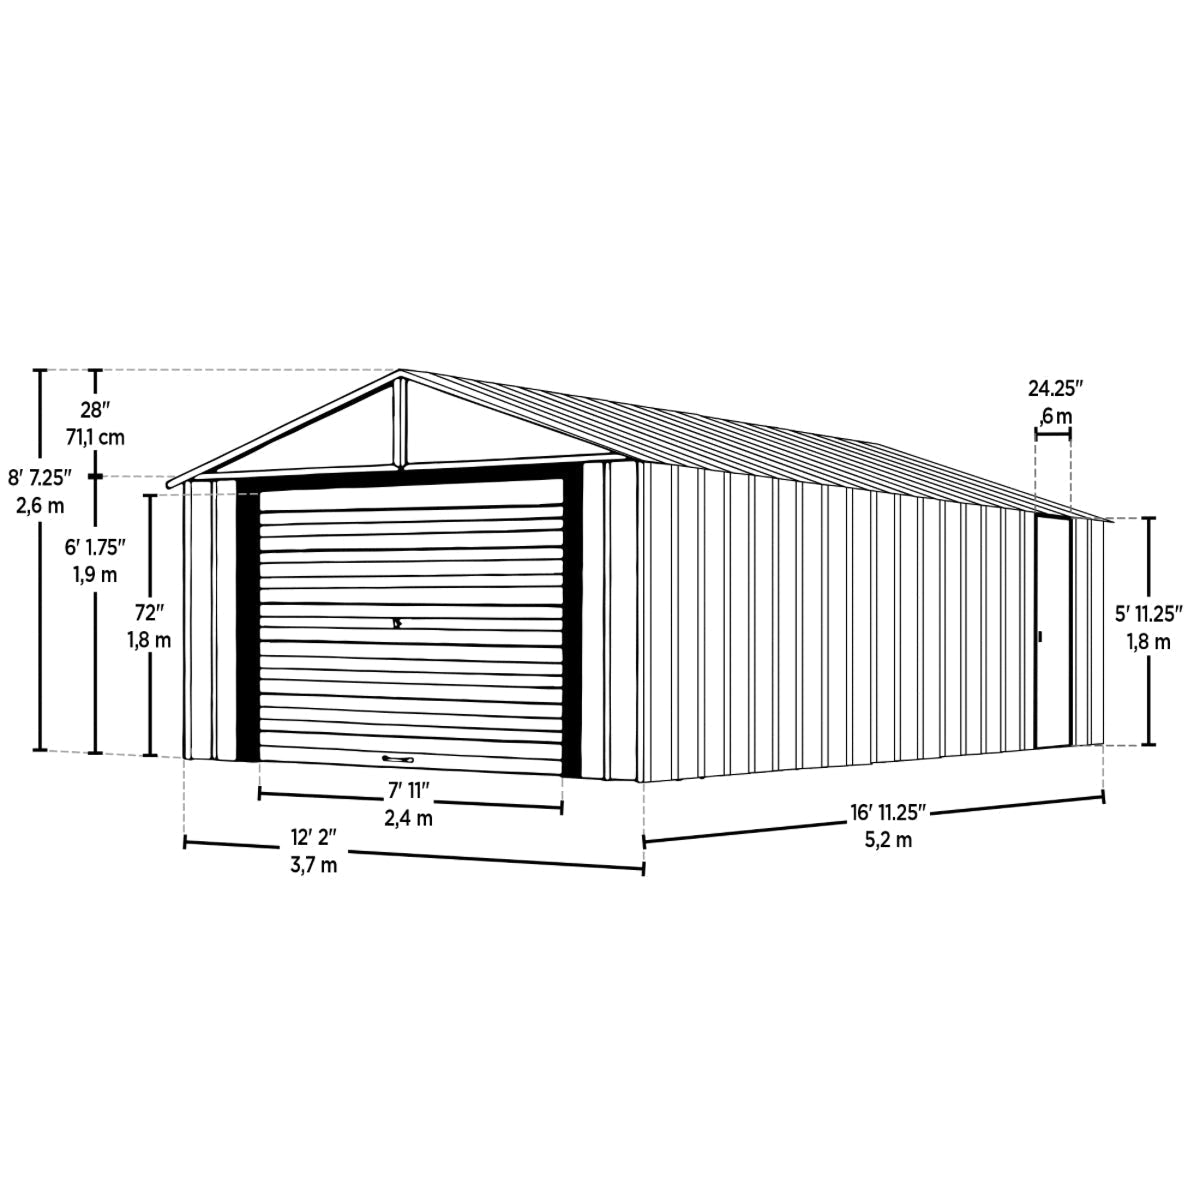 Arrow Murryhill Steel Garage Shed 12 x 17 ft.-Delightful Yard